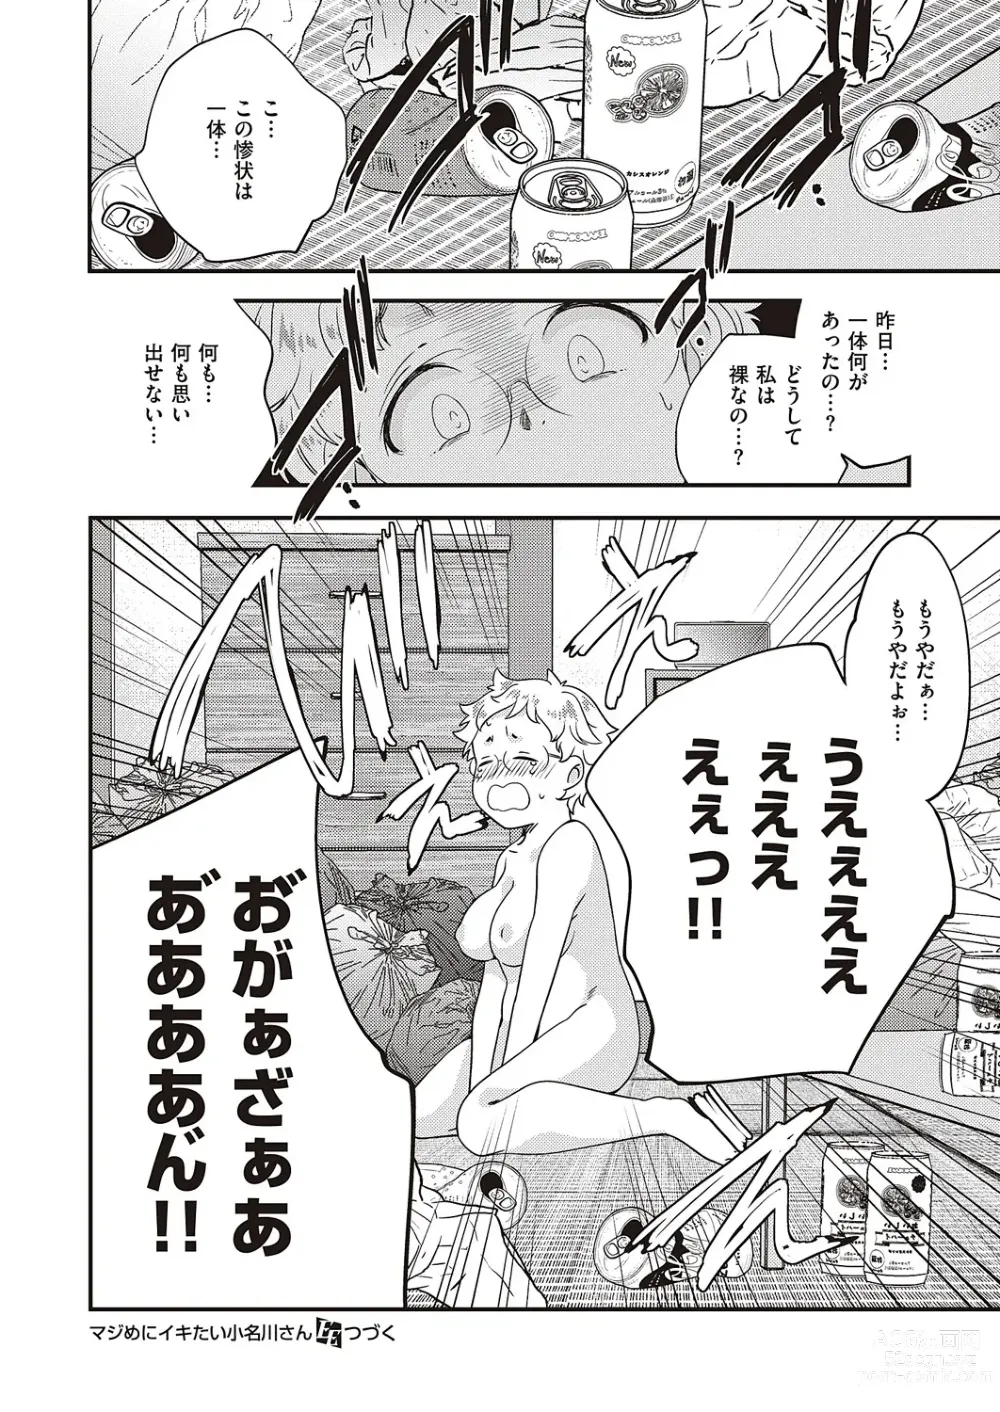 Page 903 of manga COMIC ExE 47